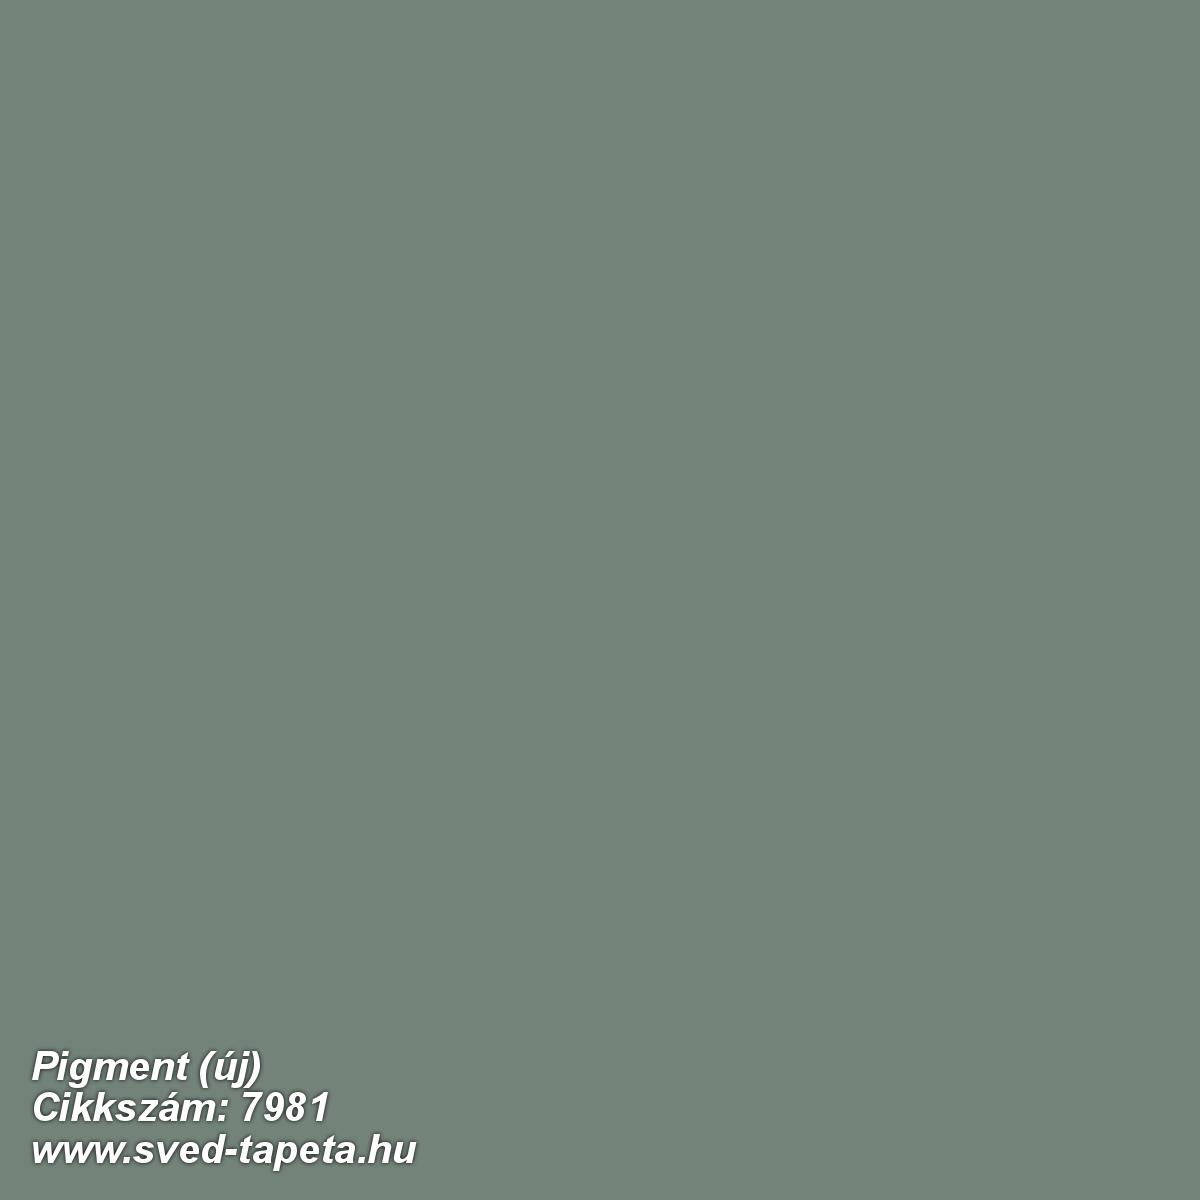 Pigment (új) 7981 cikkszámú svéd Borasgyártmányú designtapéta